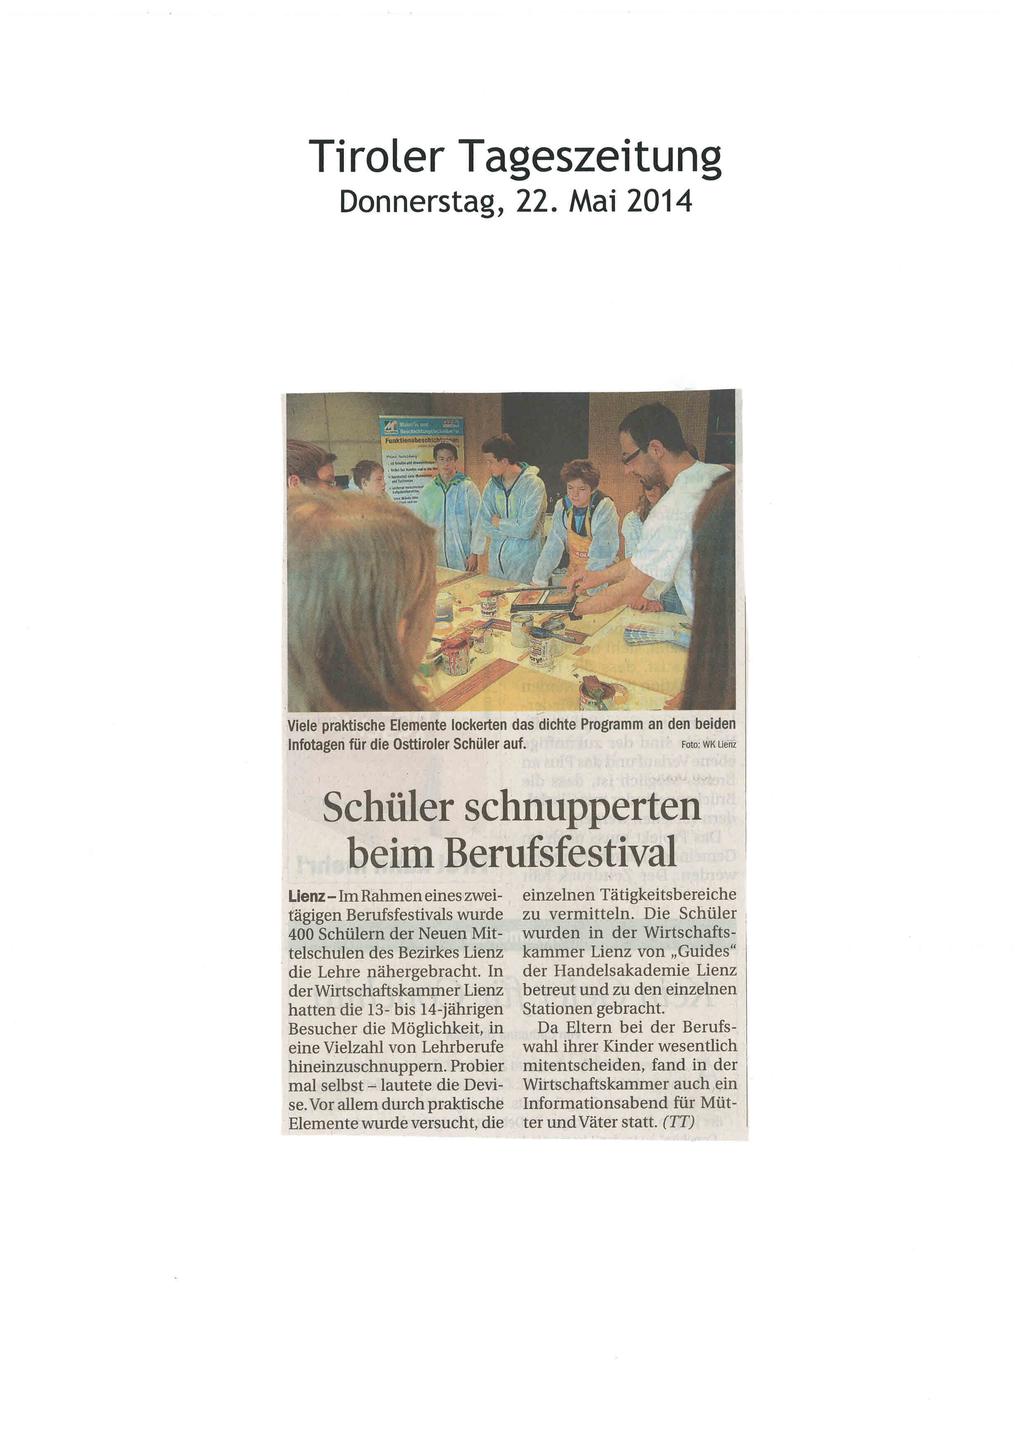 Tiroler Tageszeitung Donnerstag, 22. Mai 2014 Viele praktische EIemImte lockerten das dichte Programm an den beiden Infotageri für die Osttiroler Schmer auf.